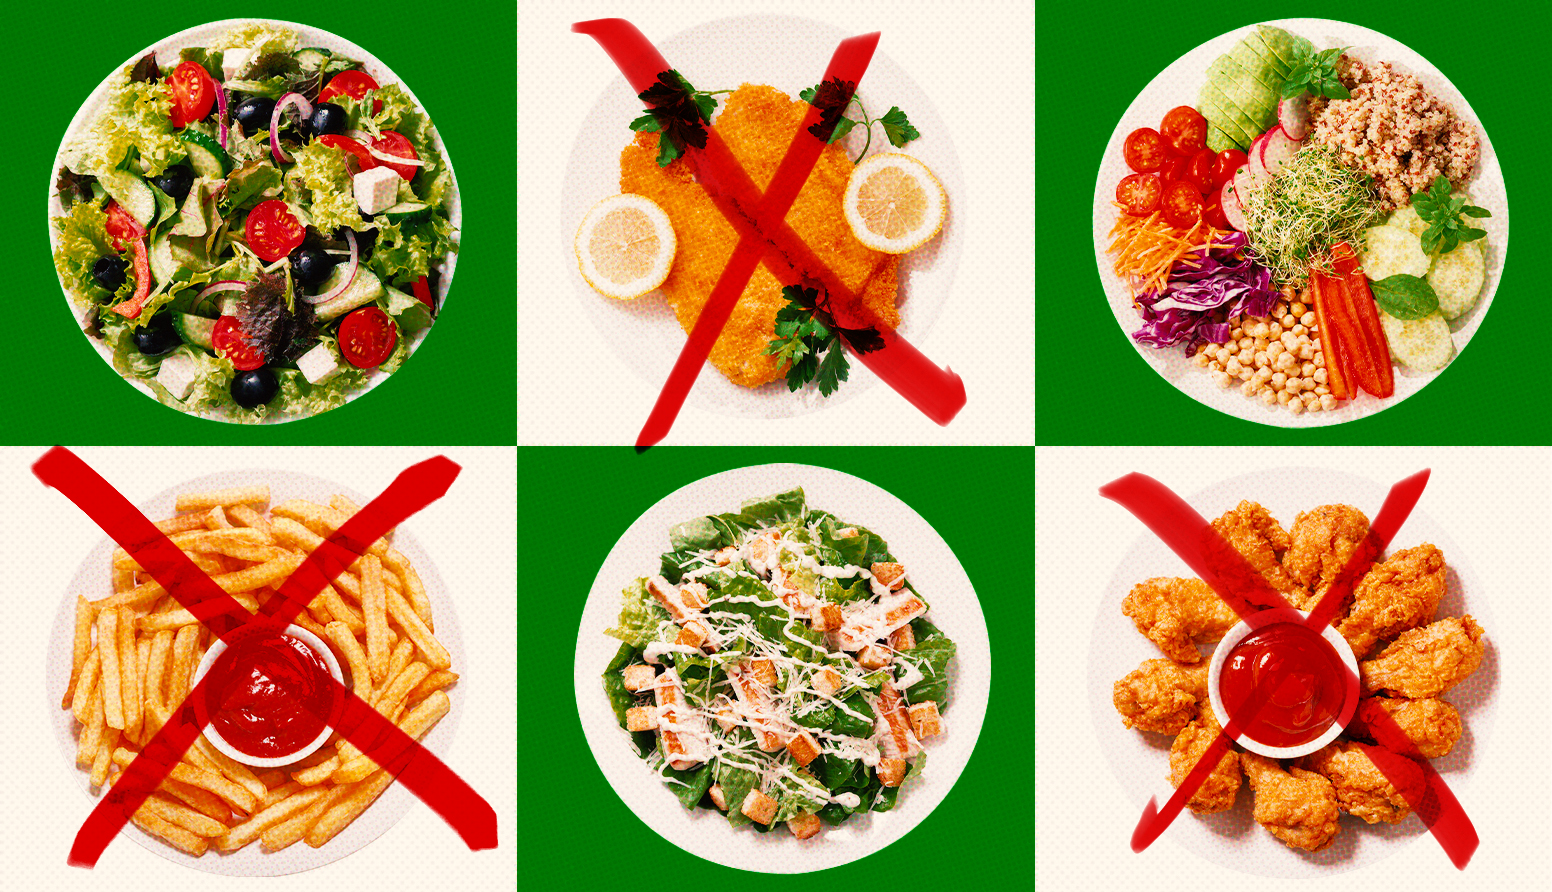 Seis platos de alimentos y tres tienen una X roja encima indicativo de que no son saludables